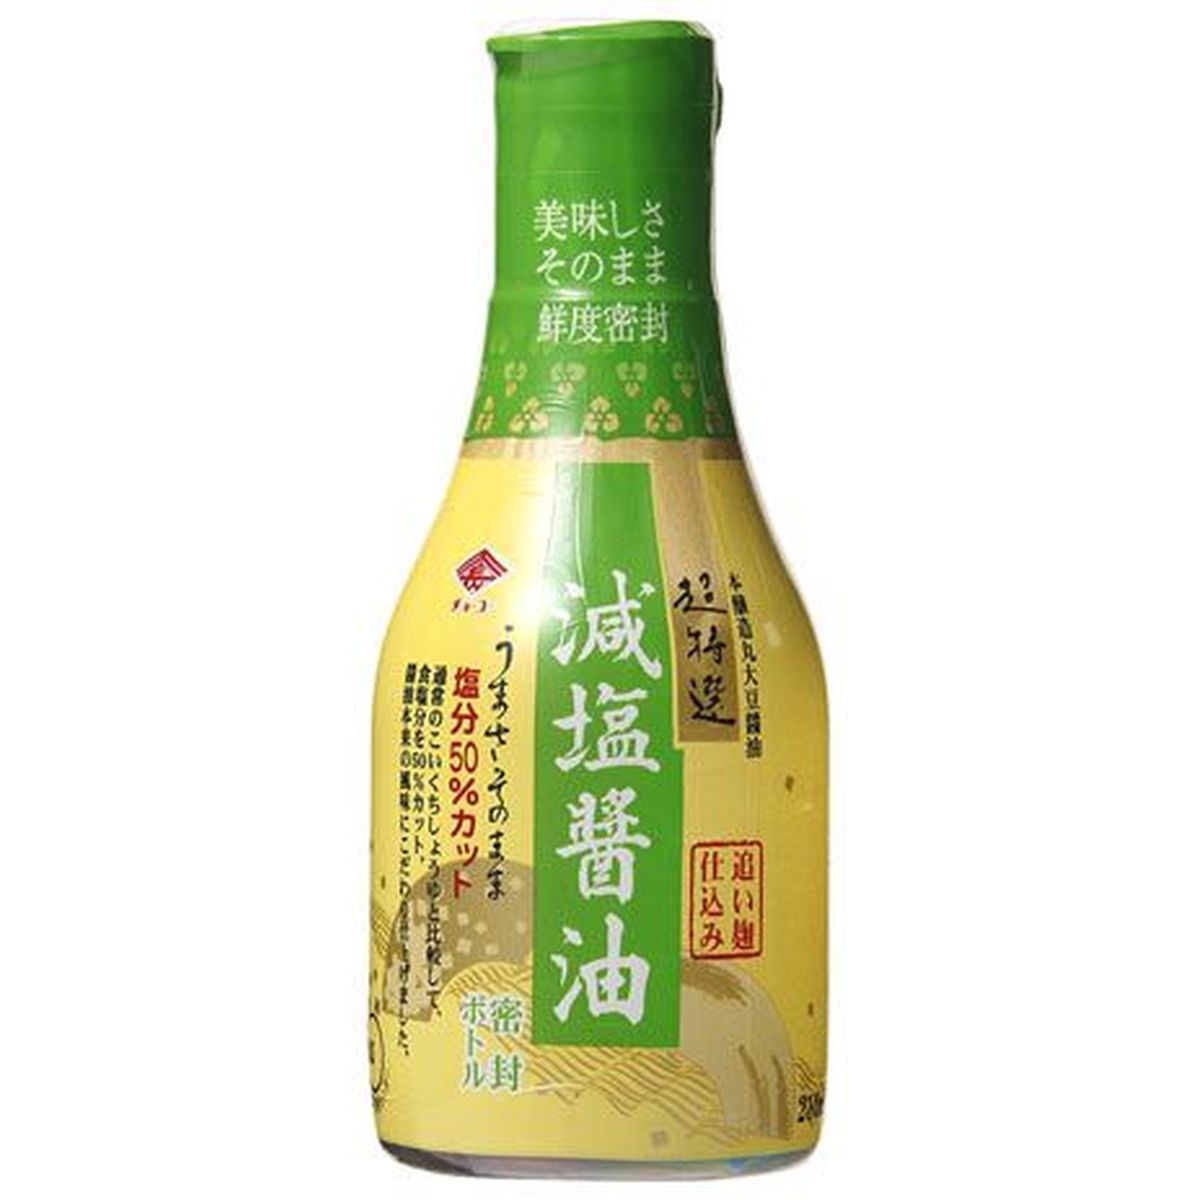 【10個入リ】チョーコー 超特選 減塩醤油 密封ボトル 210ml